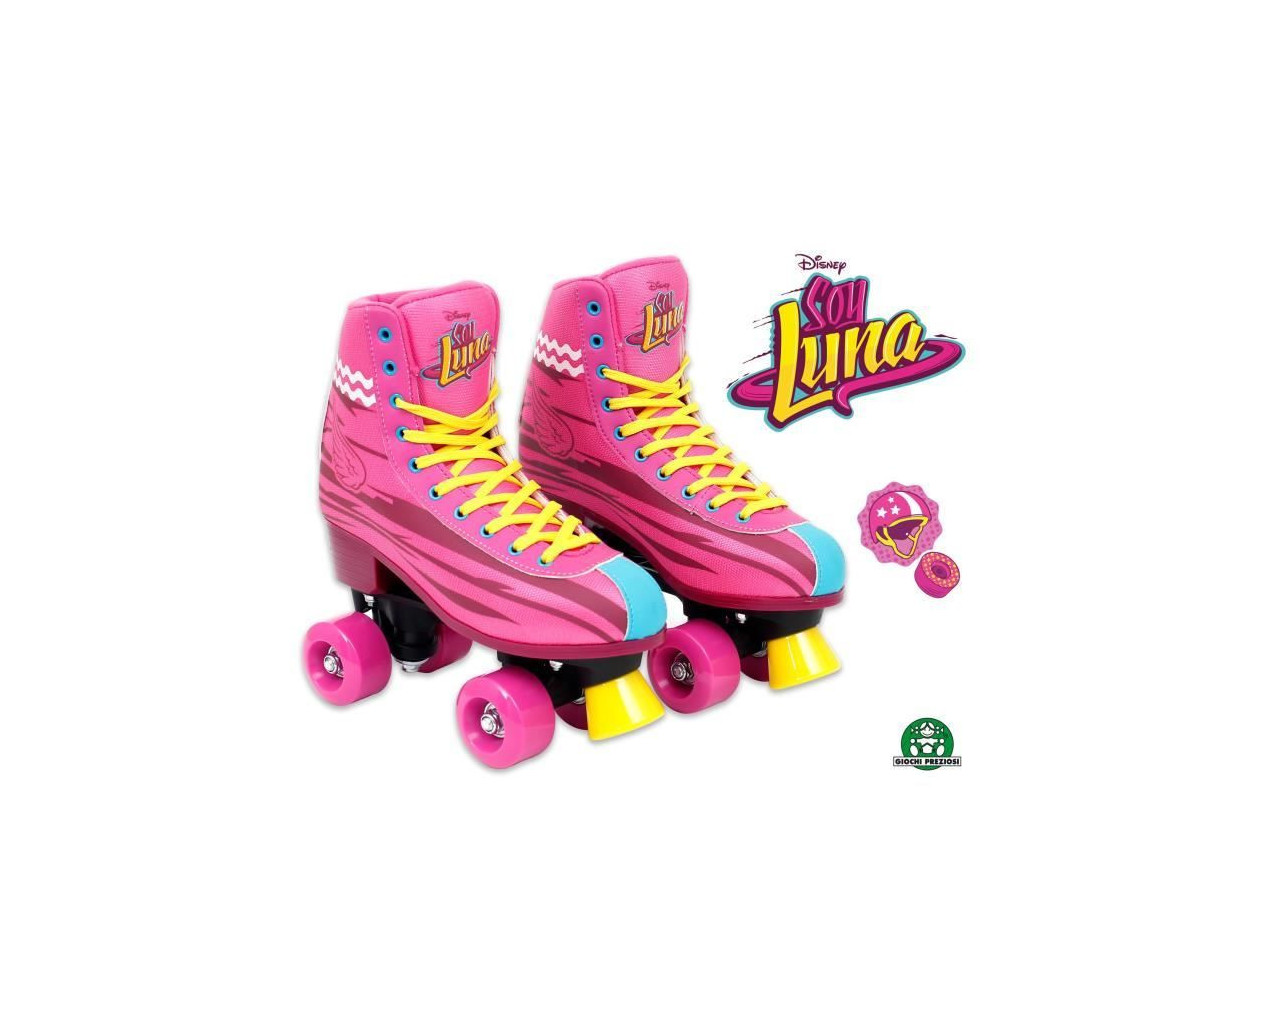 Kit pour patins soy luna, jeux exterieurs et sports